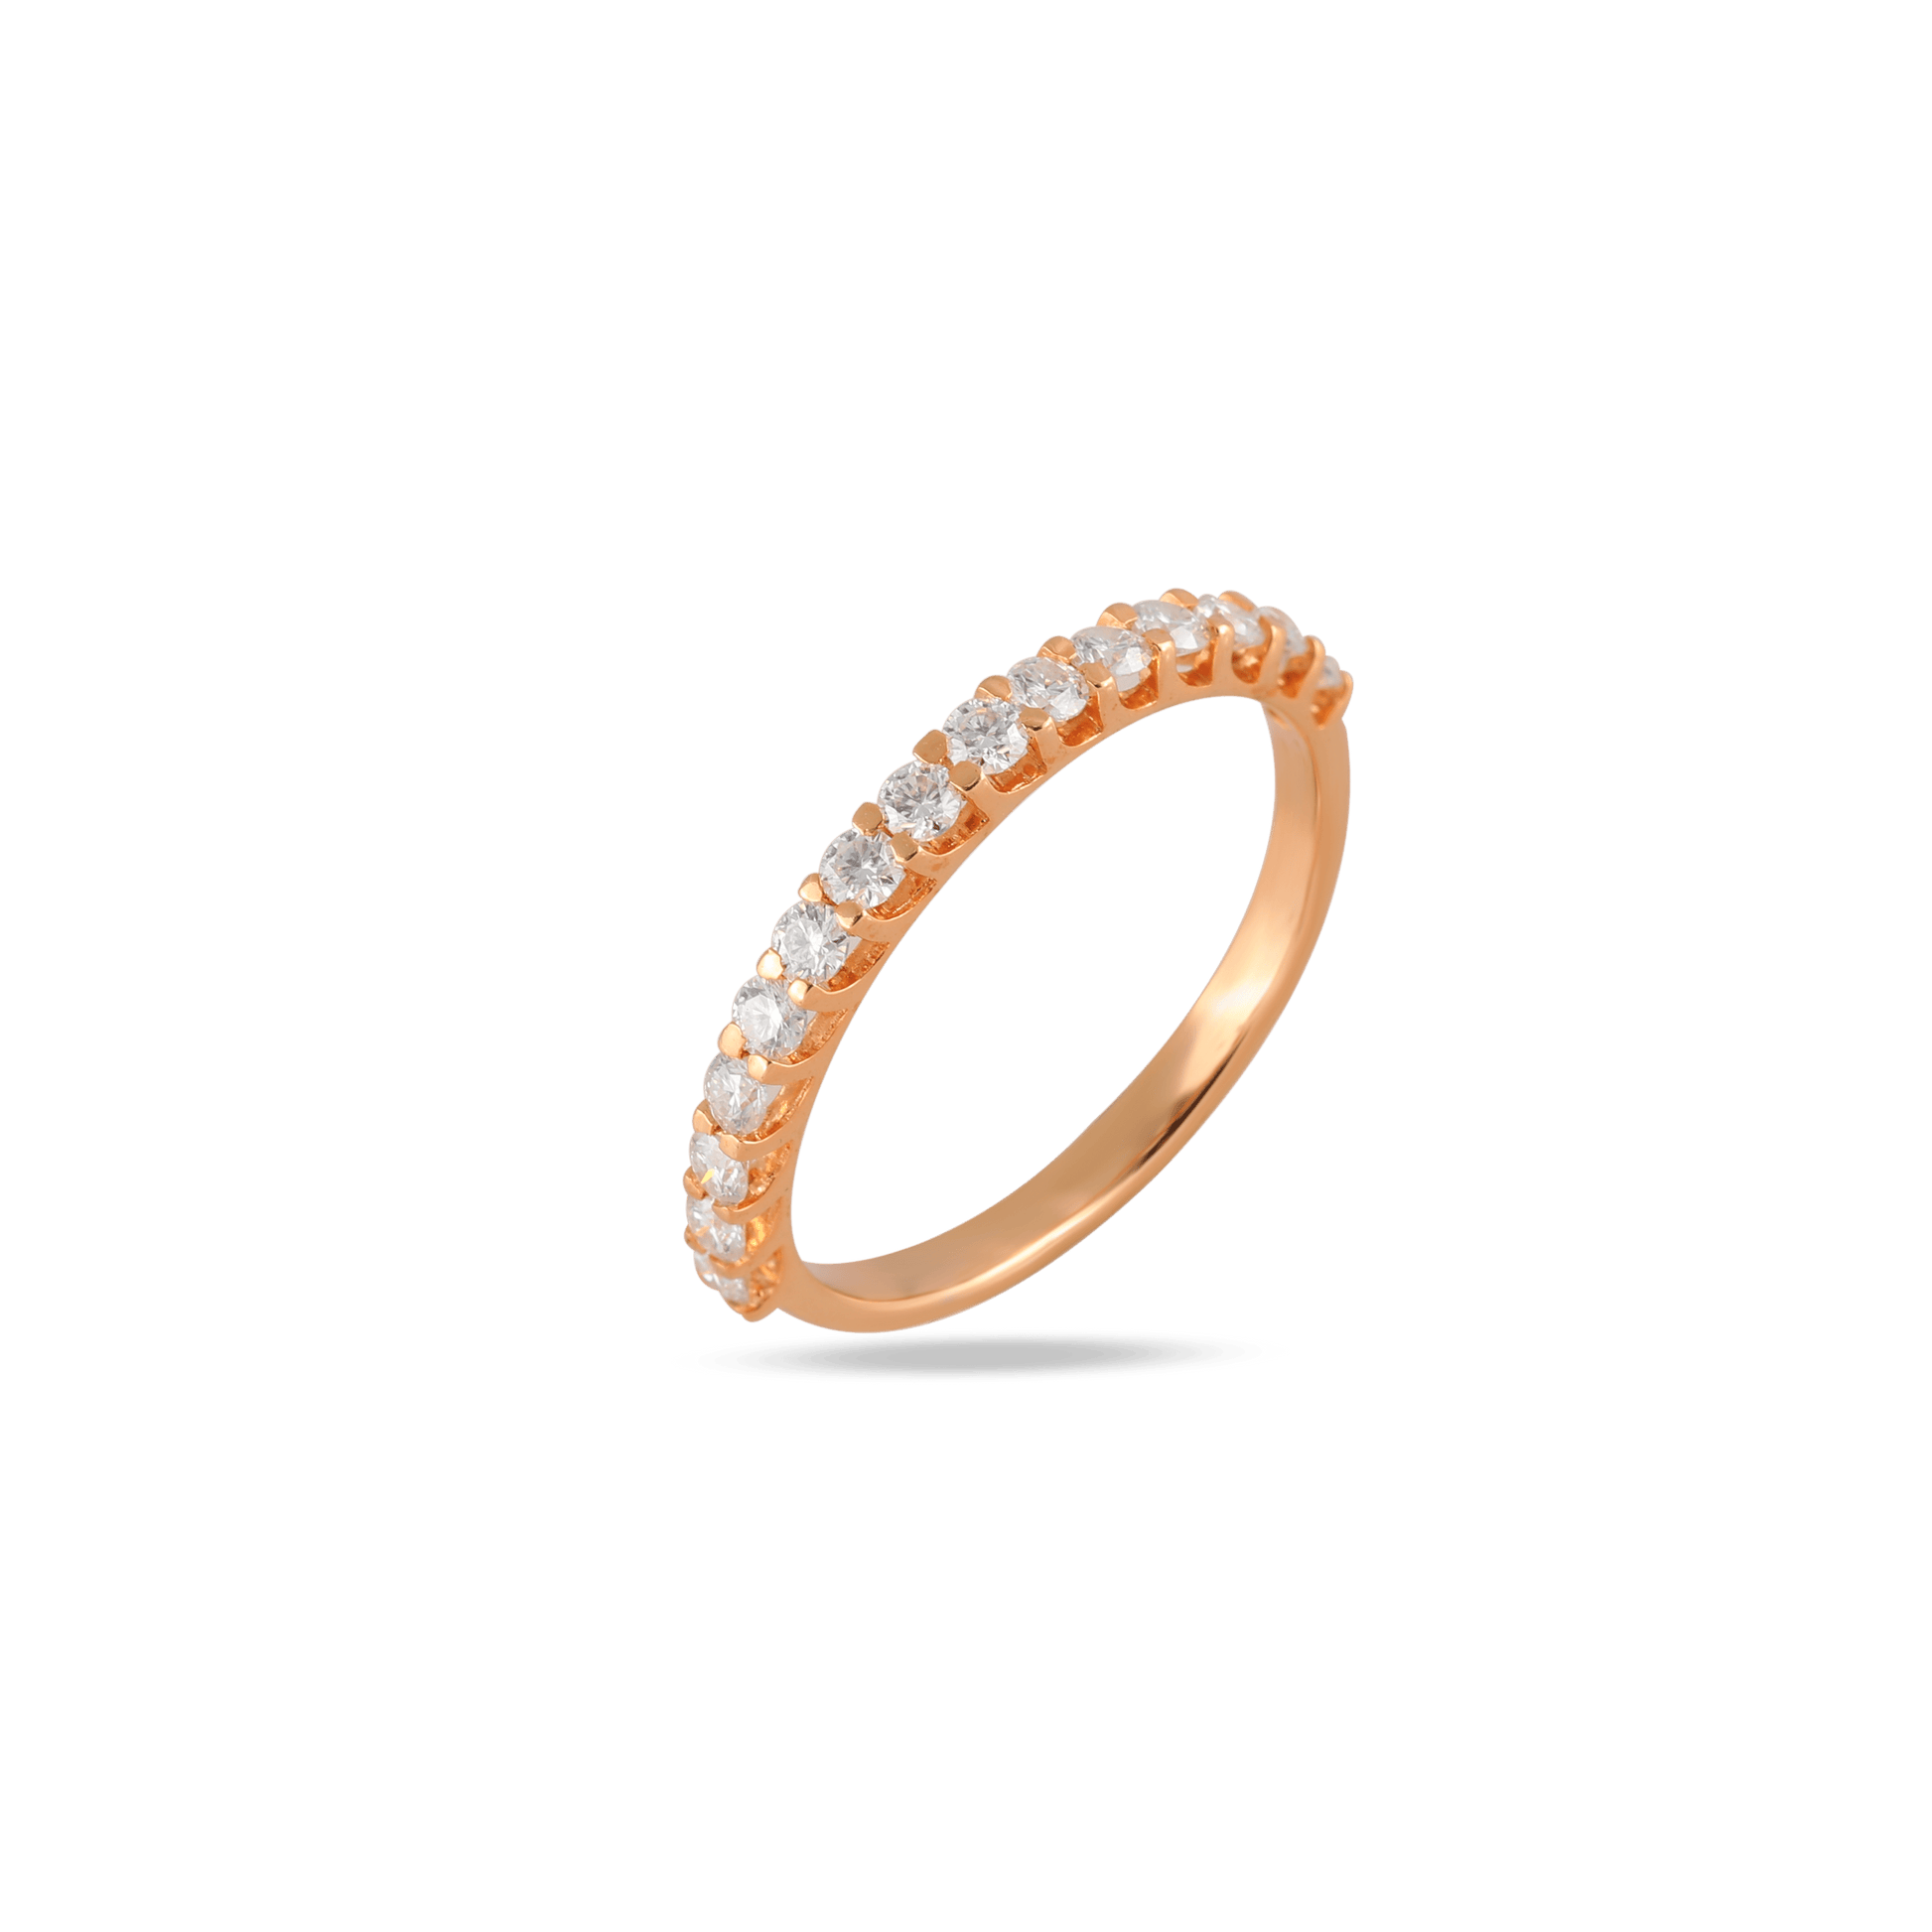 round brilliant cut diamond ring